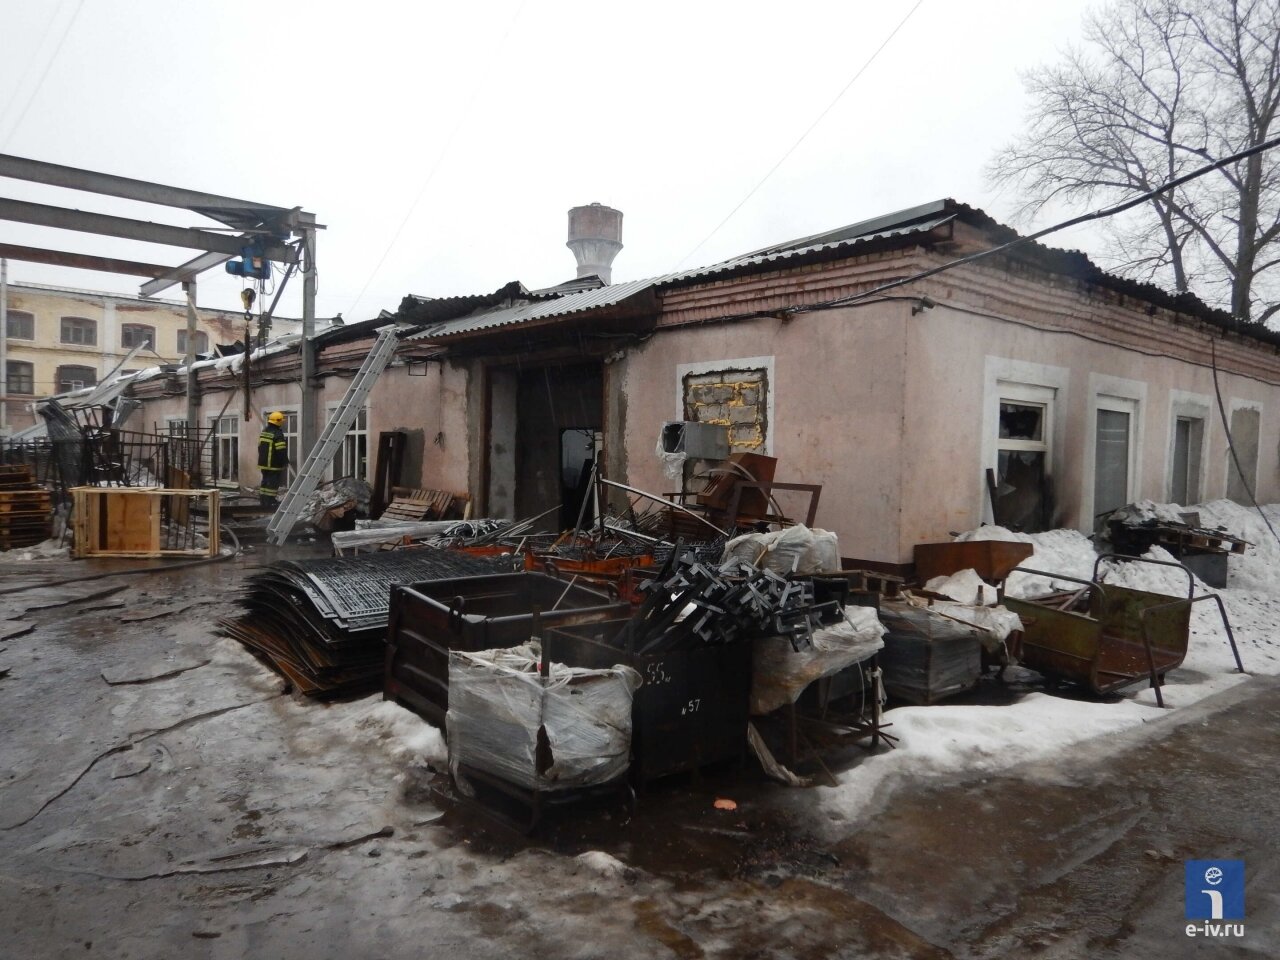 Возле сгоревшего склада лежат вещи, которые удалось сохранить, пожар в Ивантеевке, Подмосковье